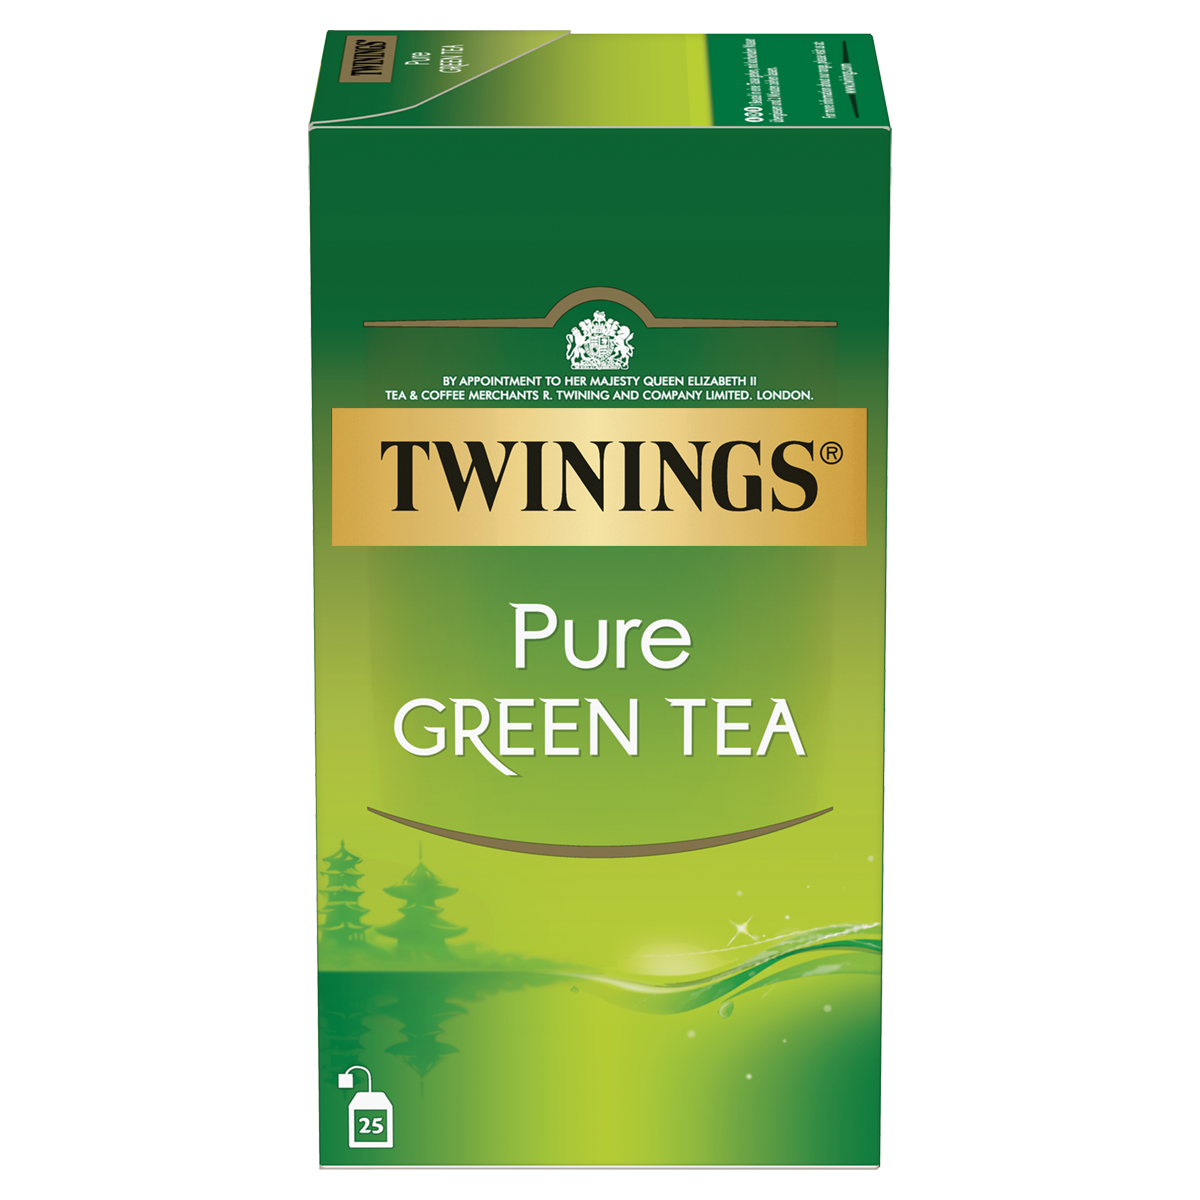  Pure Green Tea - die reinste Grüntee Form